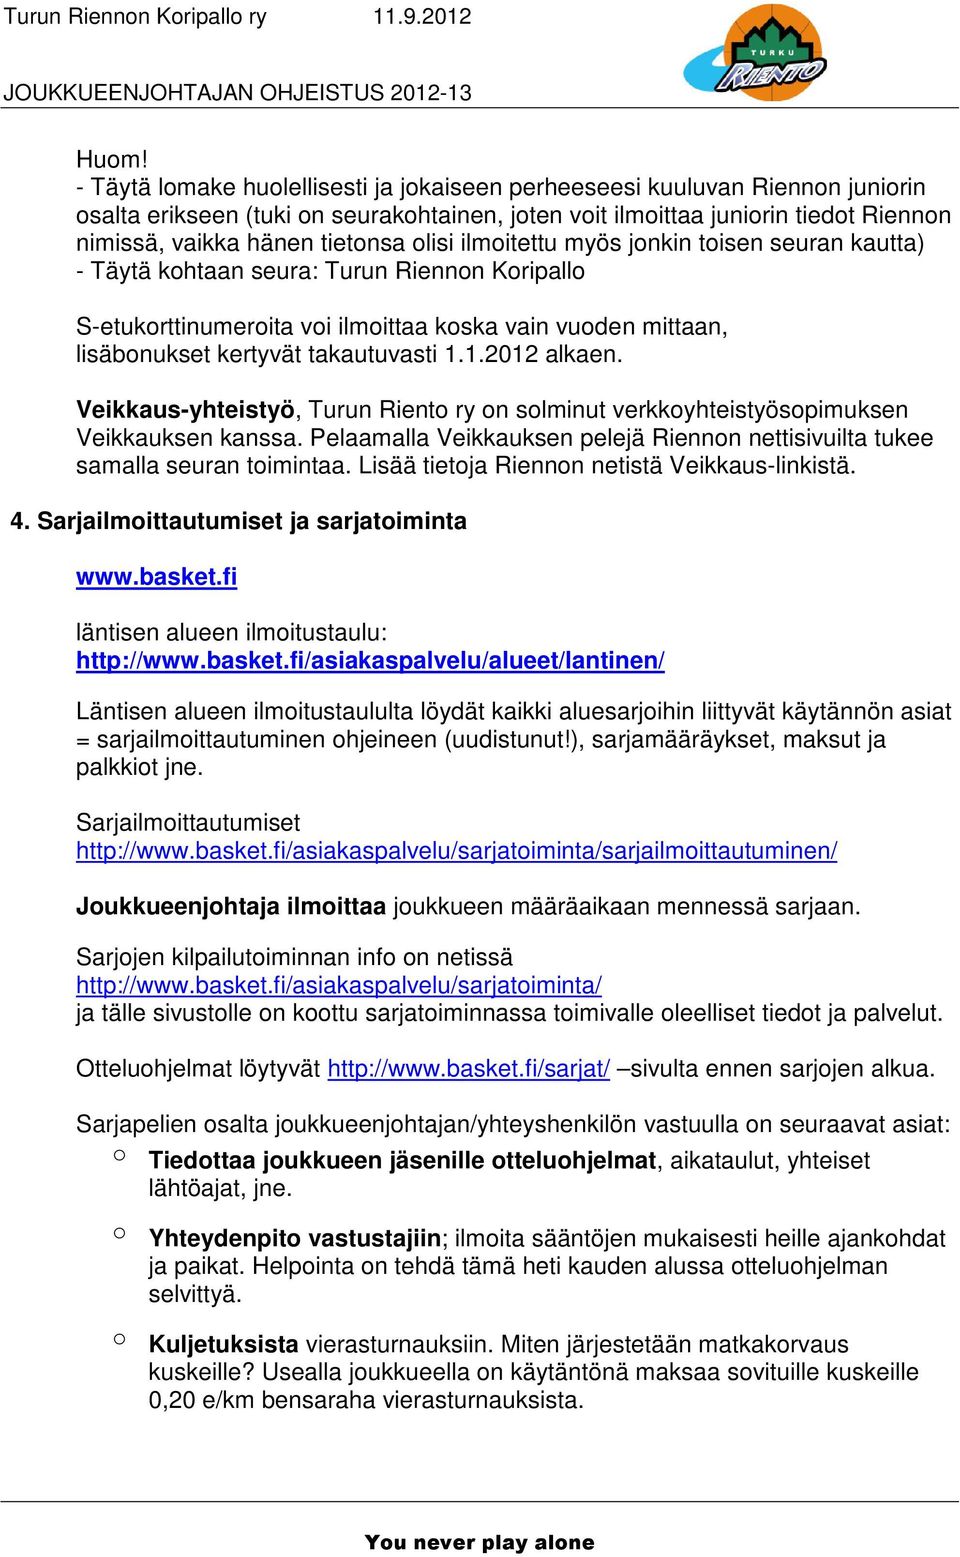 takautuvasti 1.1.2012 alkaen. Veikkaus-yhteistyö, Turun Riento ry on solminut verkkoyhteistyösopimuksen Veikkauksen kanssa.